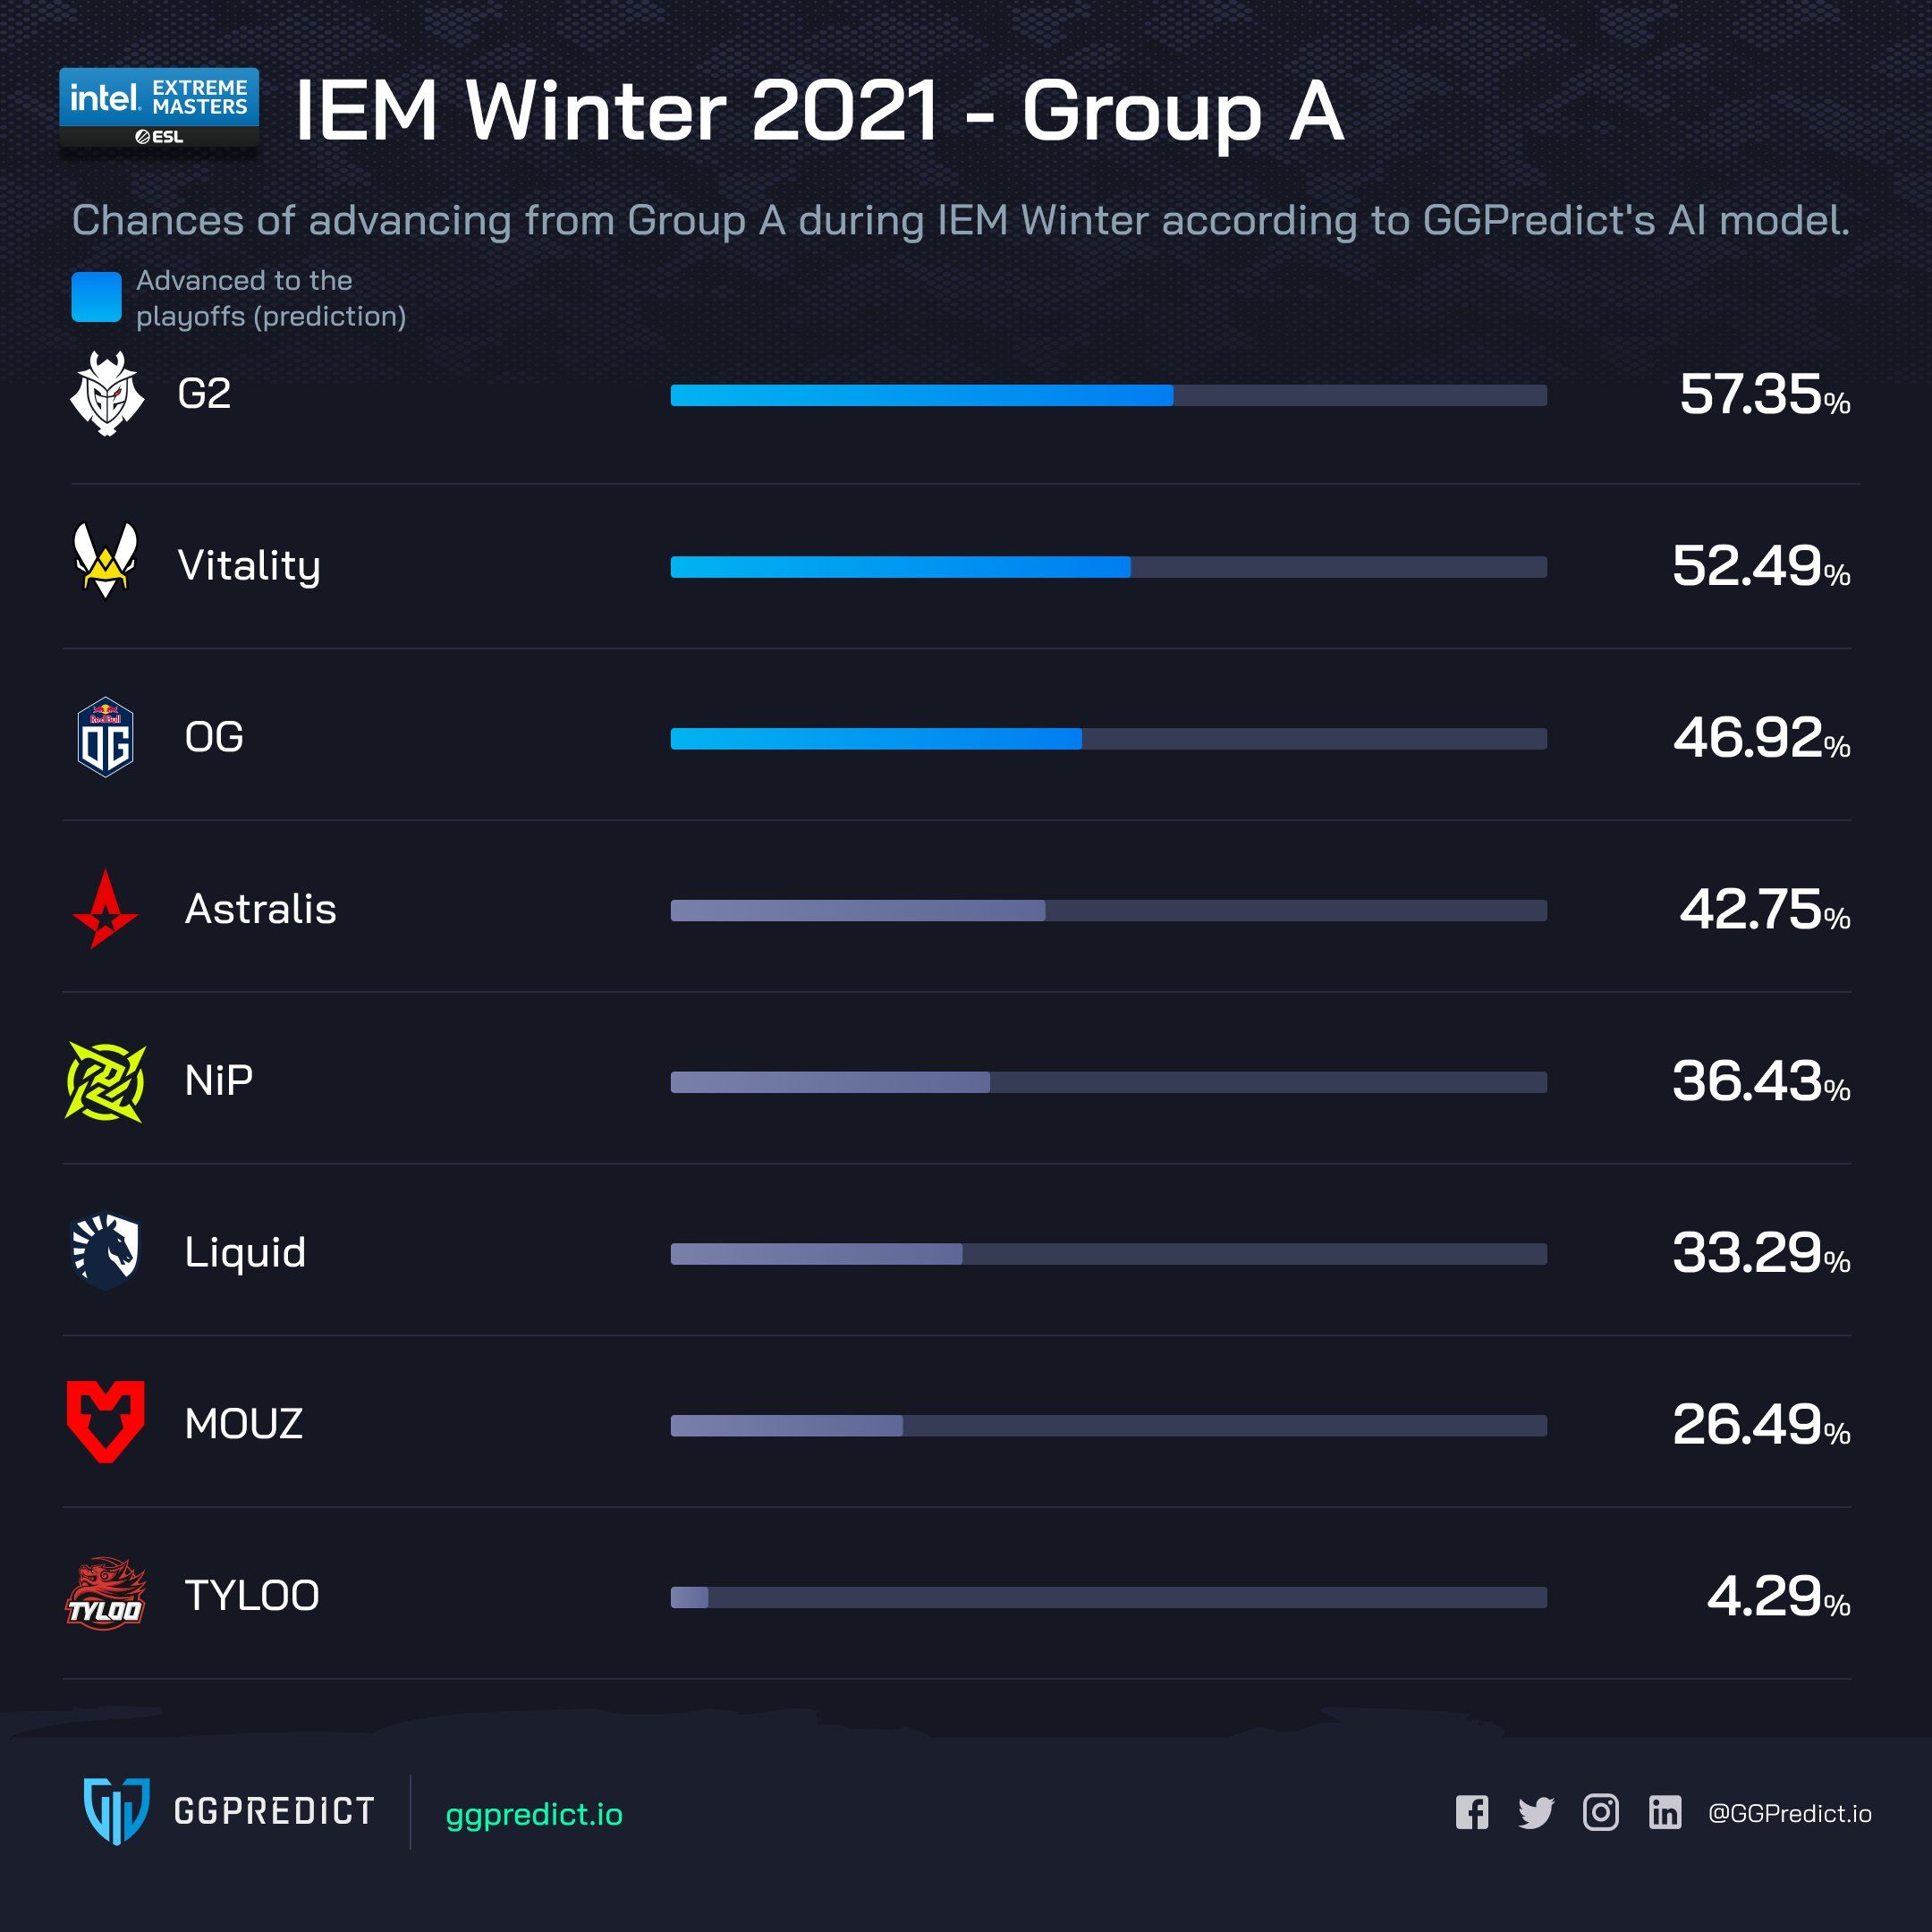 Шансы участников группы A выйти в плей-офф IEM Winter 2021.
Источник: GGPredict.io